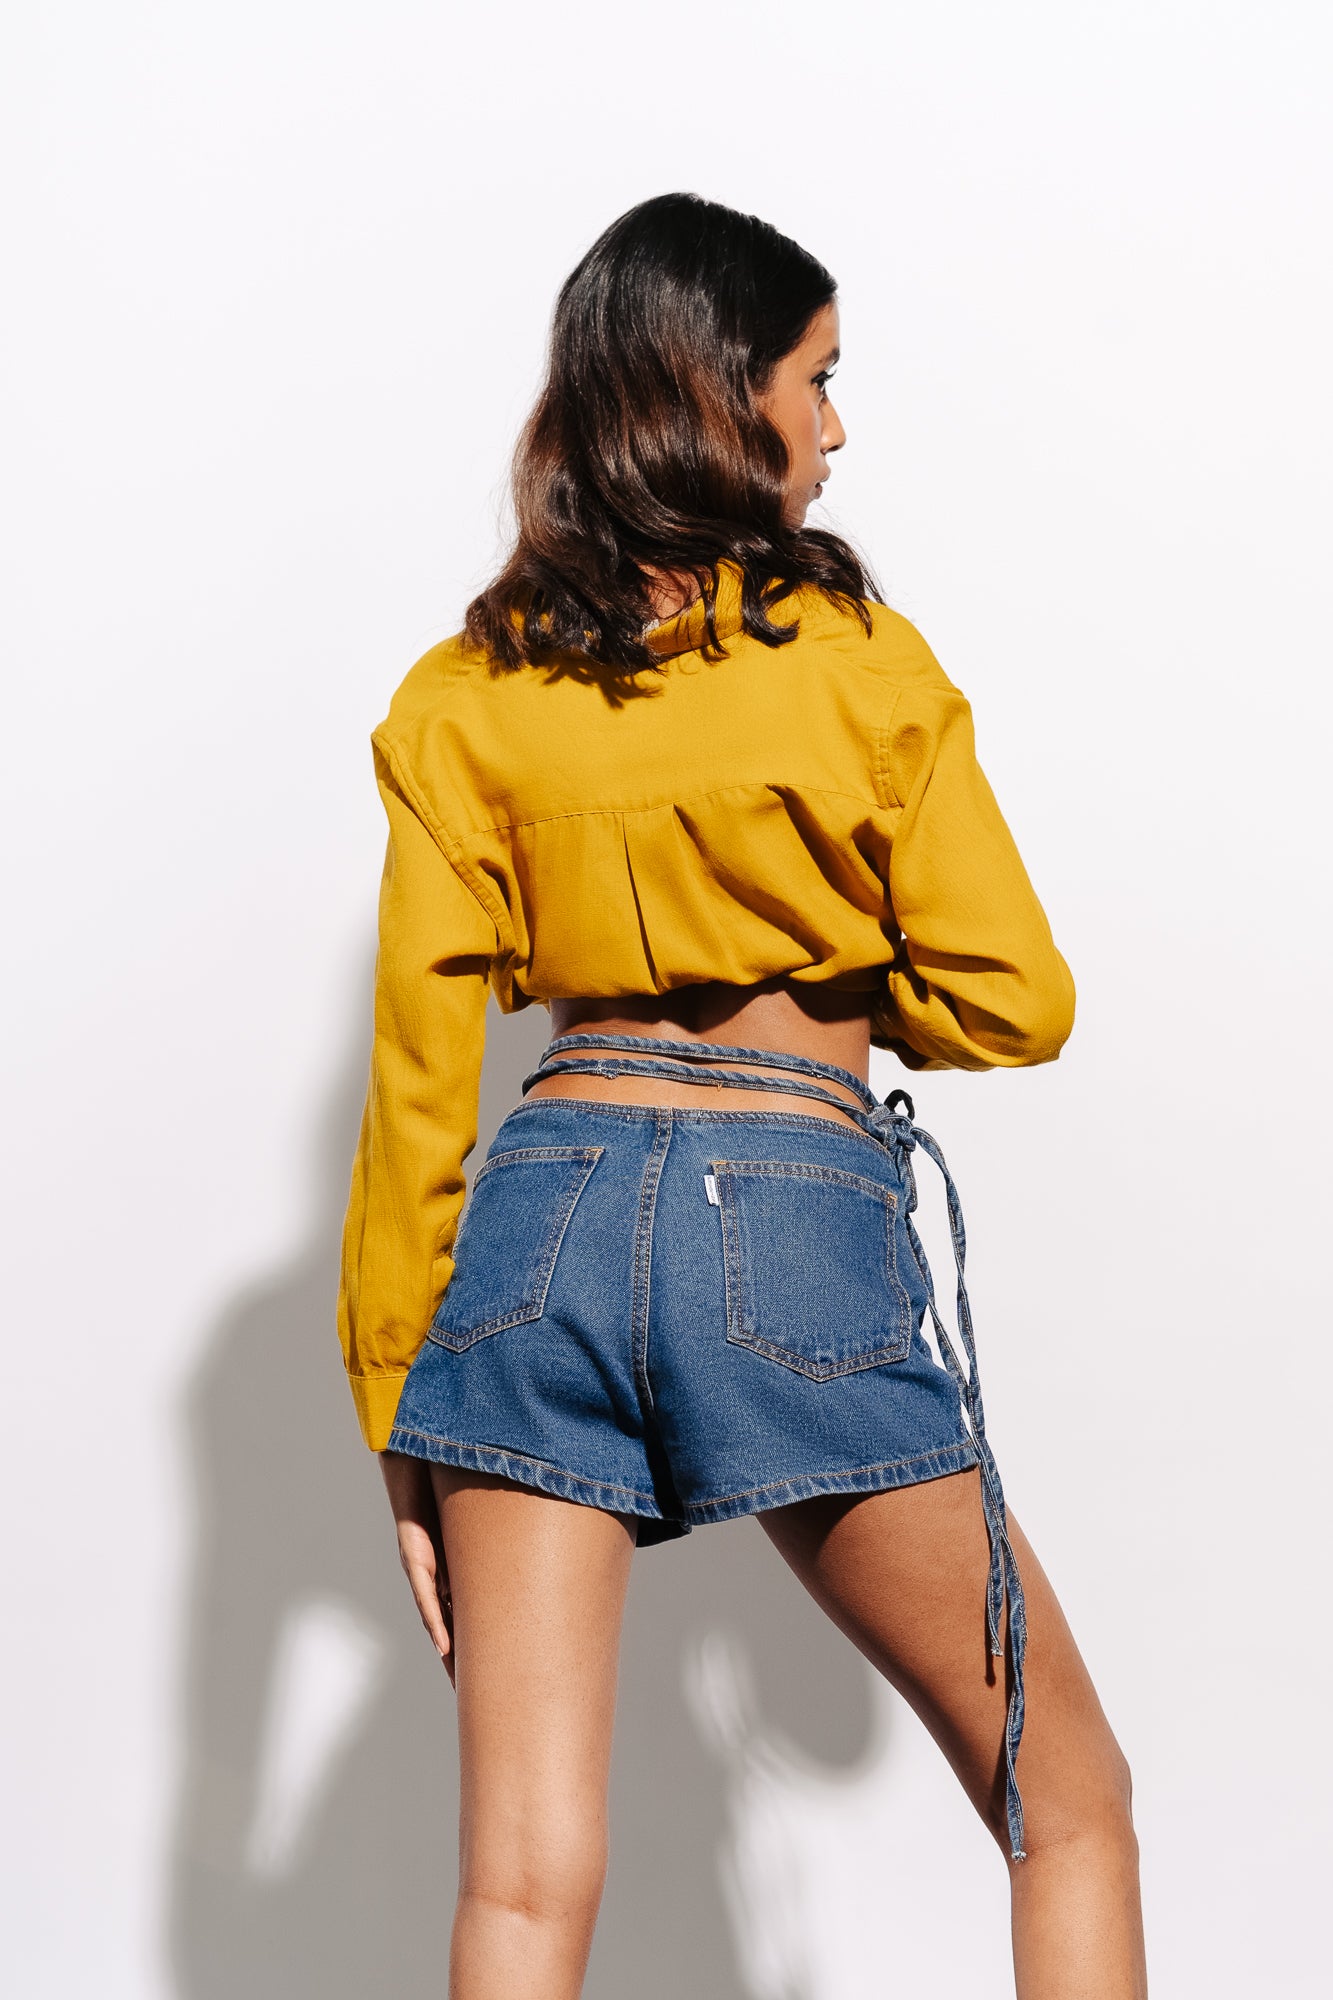 Buy Online|Spykar Women White Cottom Slim Fit Above Knee Length Denim Shorts